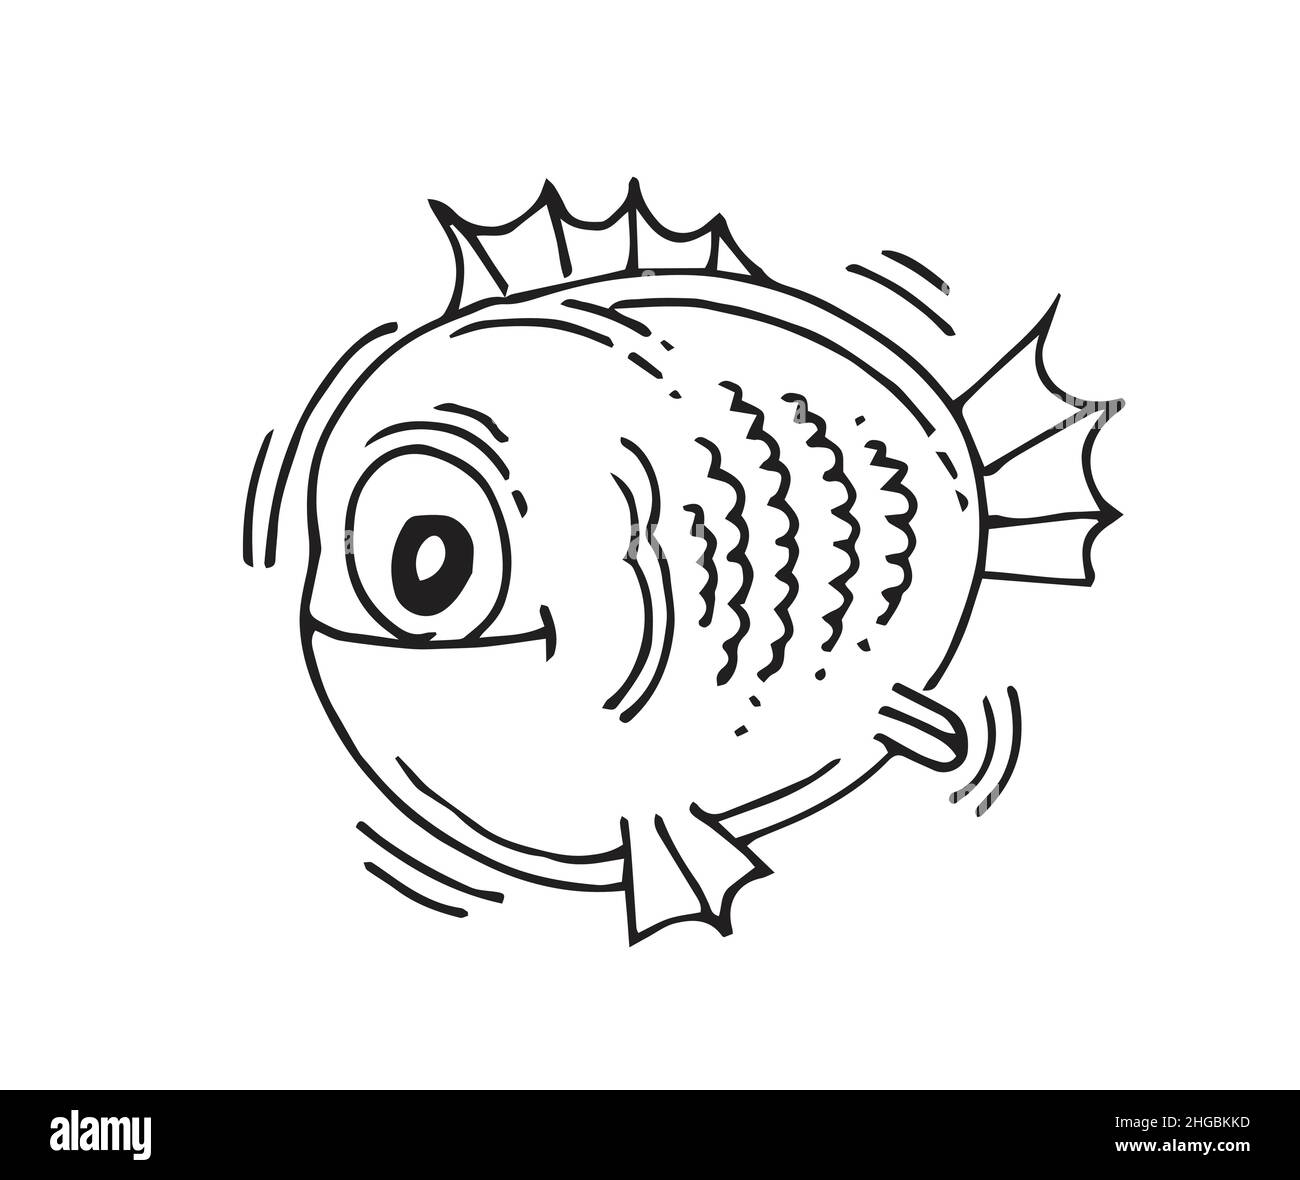 Lustige runde Fische. Cartoon Tier Charakter. Unterwasserwelt. Skizze umreißen. Die Handzeichnung ist auf einem weißen Hintergrund isoliert. Vektor Stock Vektor